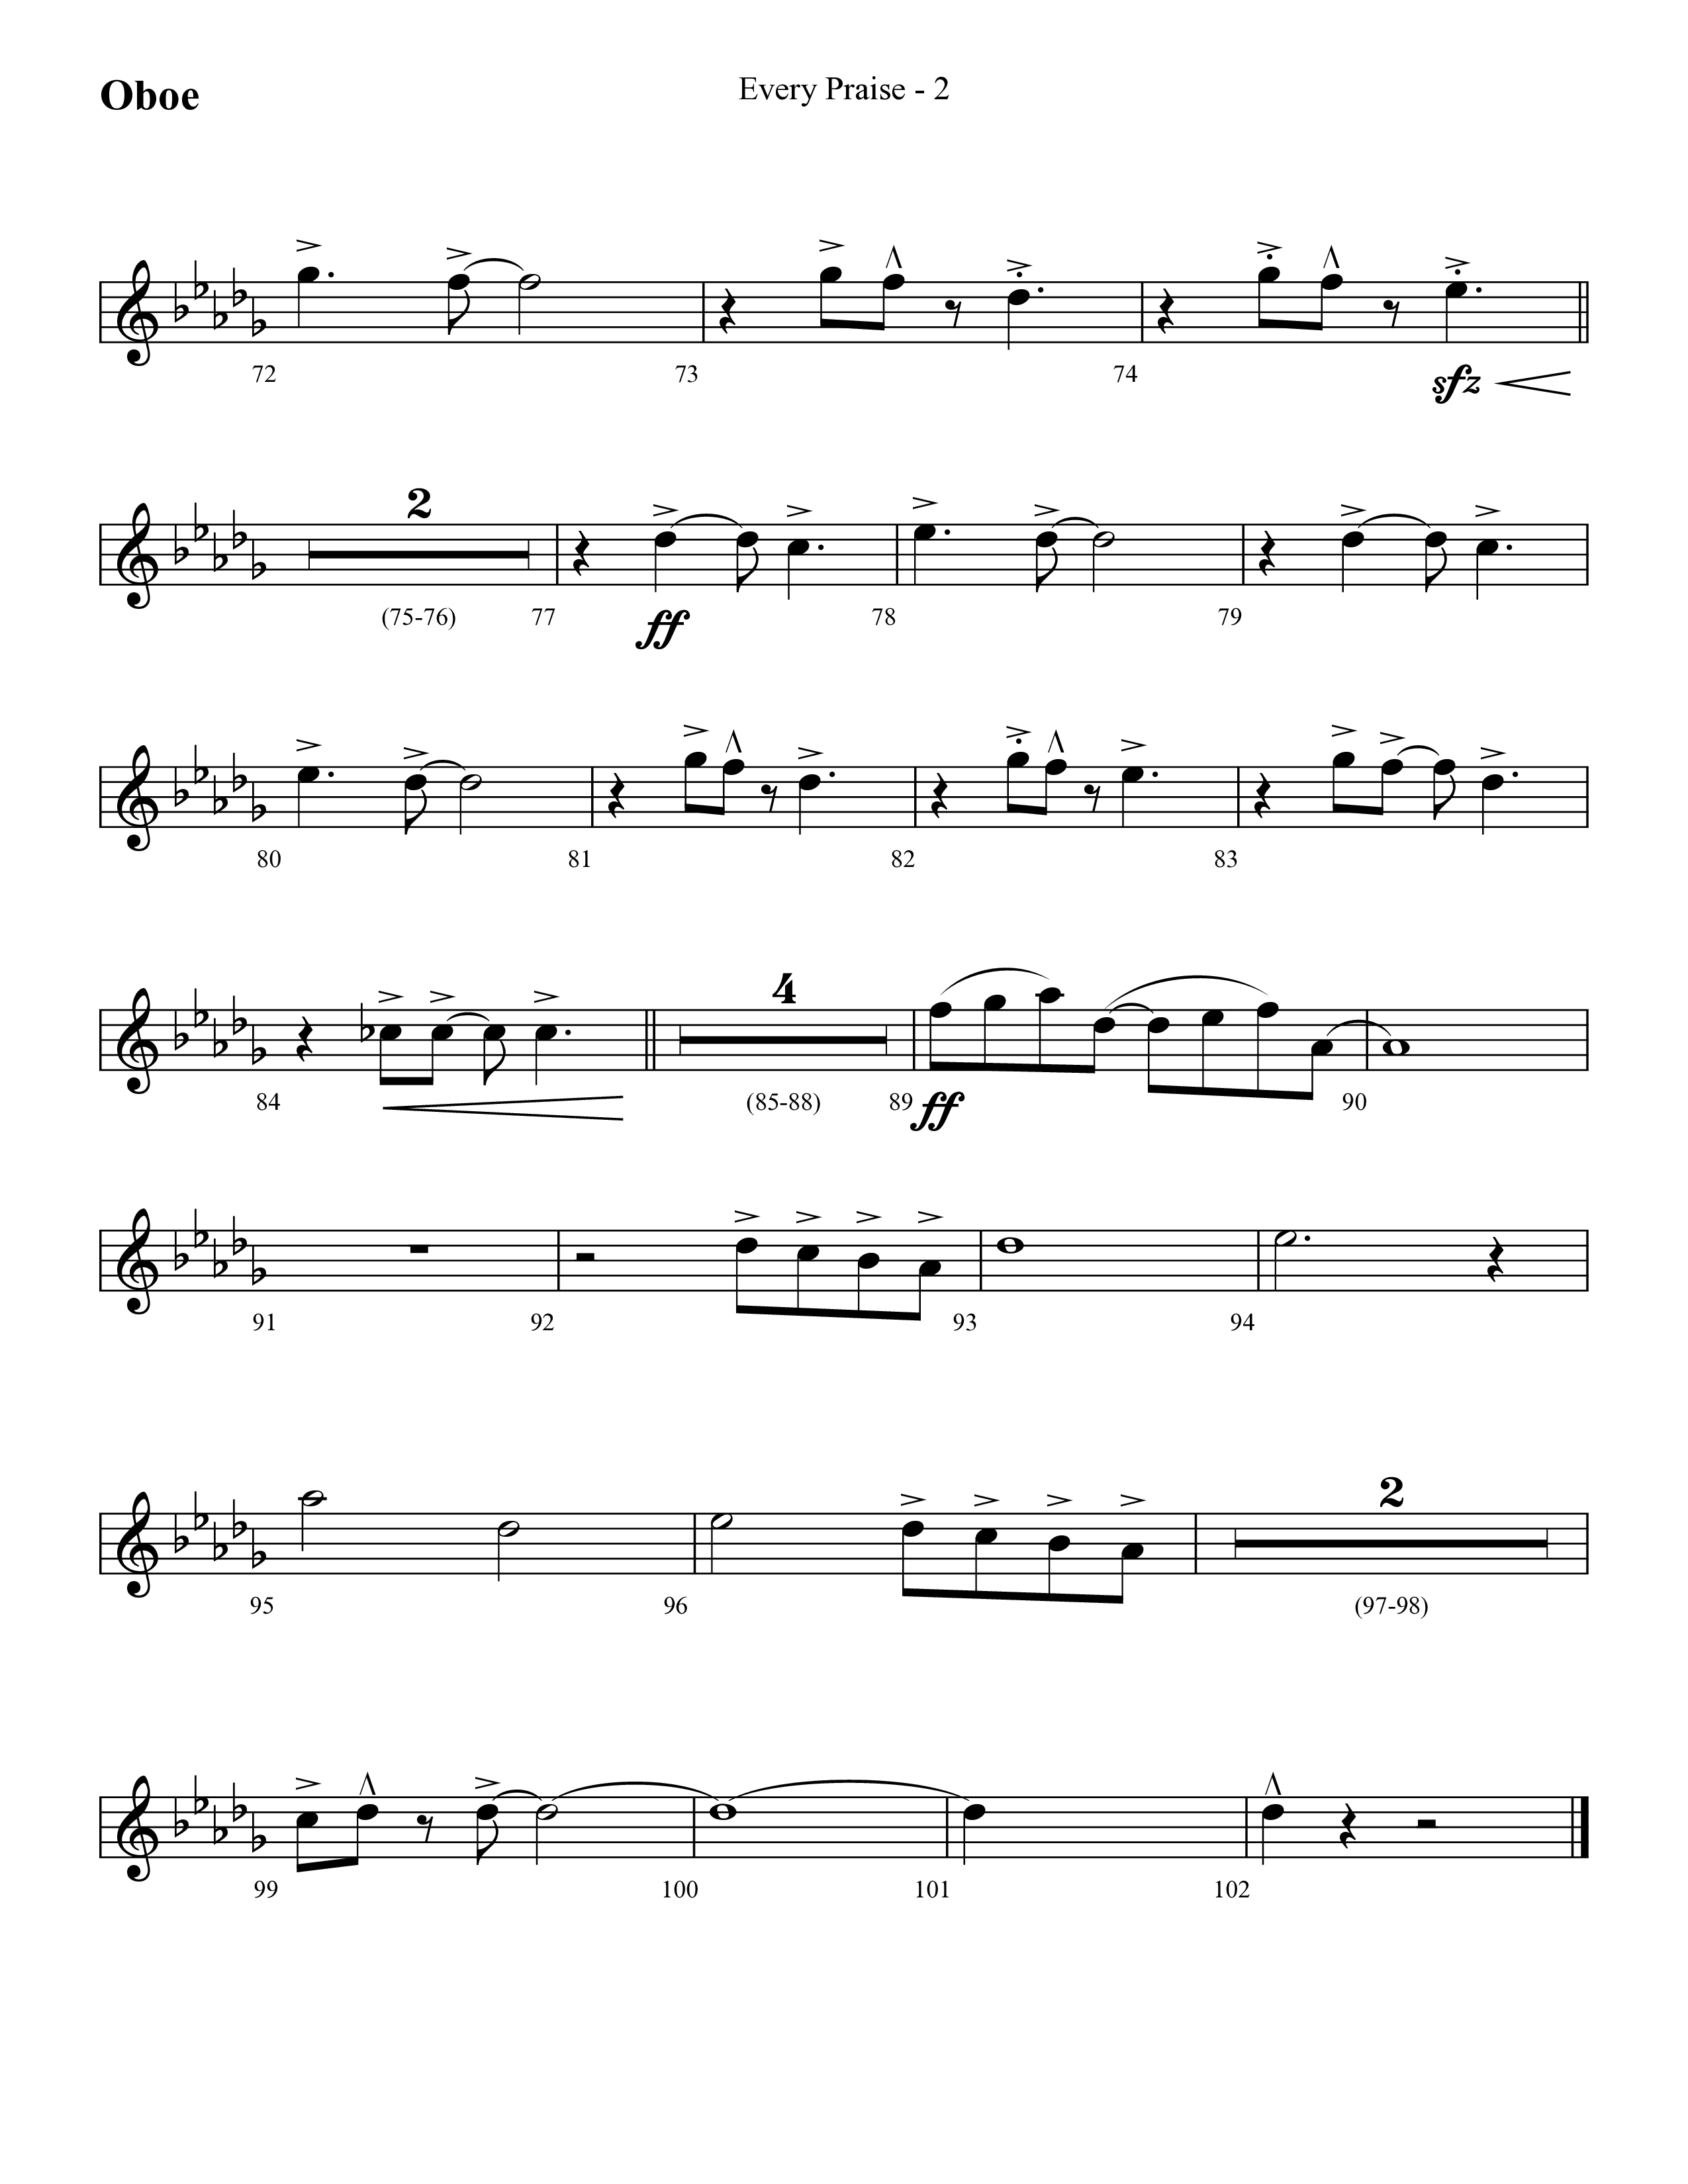 Every Praise (Choral Anthem SATB) Oboe (Lifeway Choral / Arr. Cliff Duren)